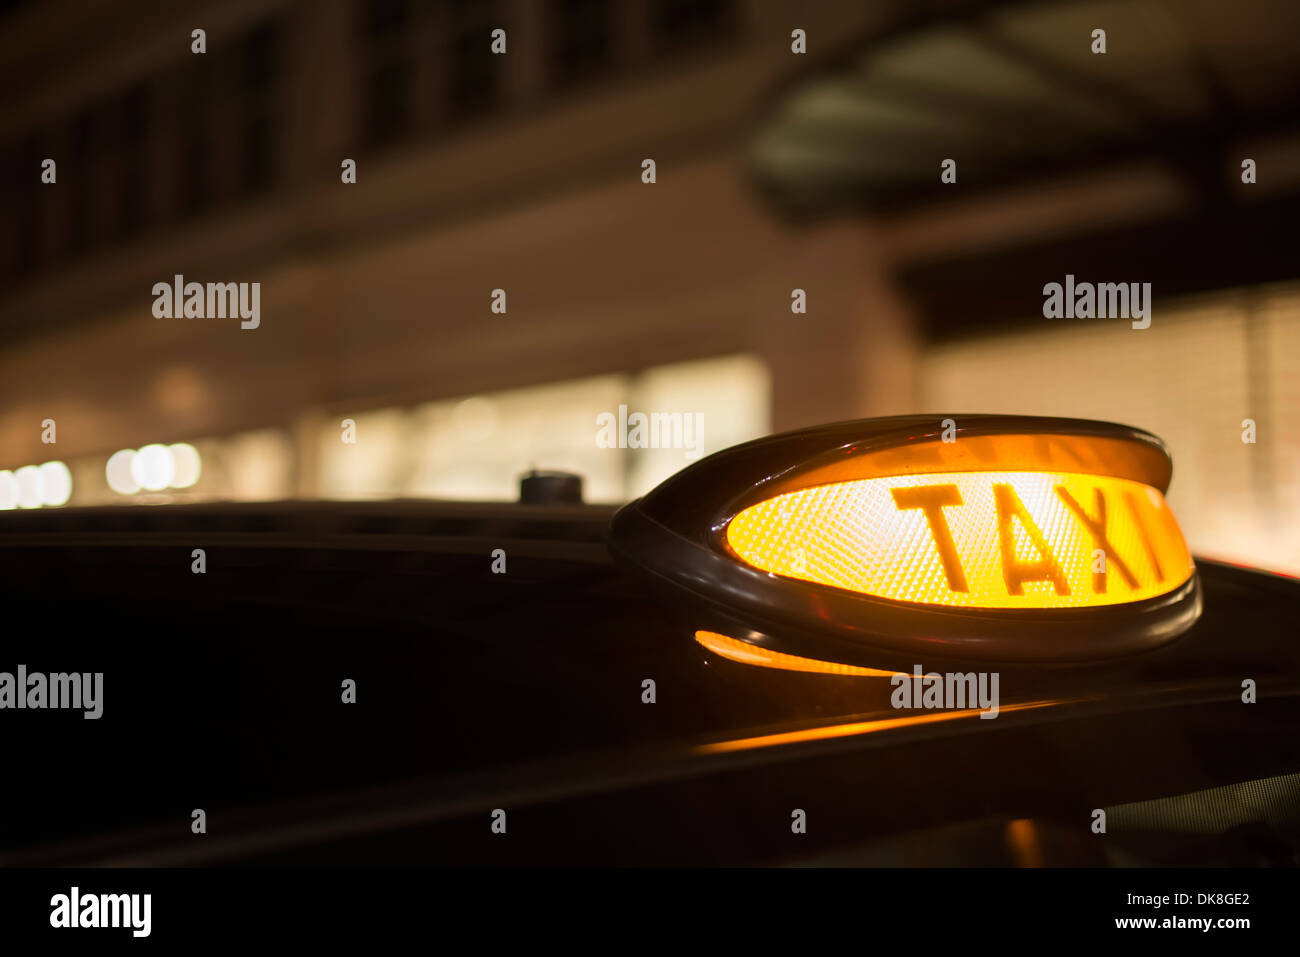 Eine glühende taxi Schild auf dem Dach des Autos in das Licht der Lichter  der Nacht Stadt Stockfotografie - Alamy